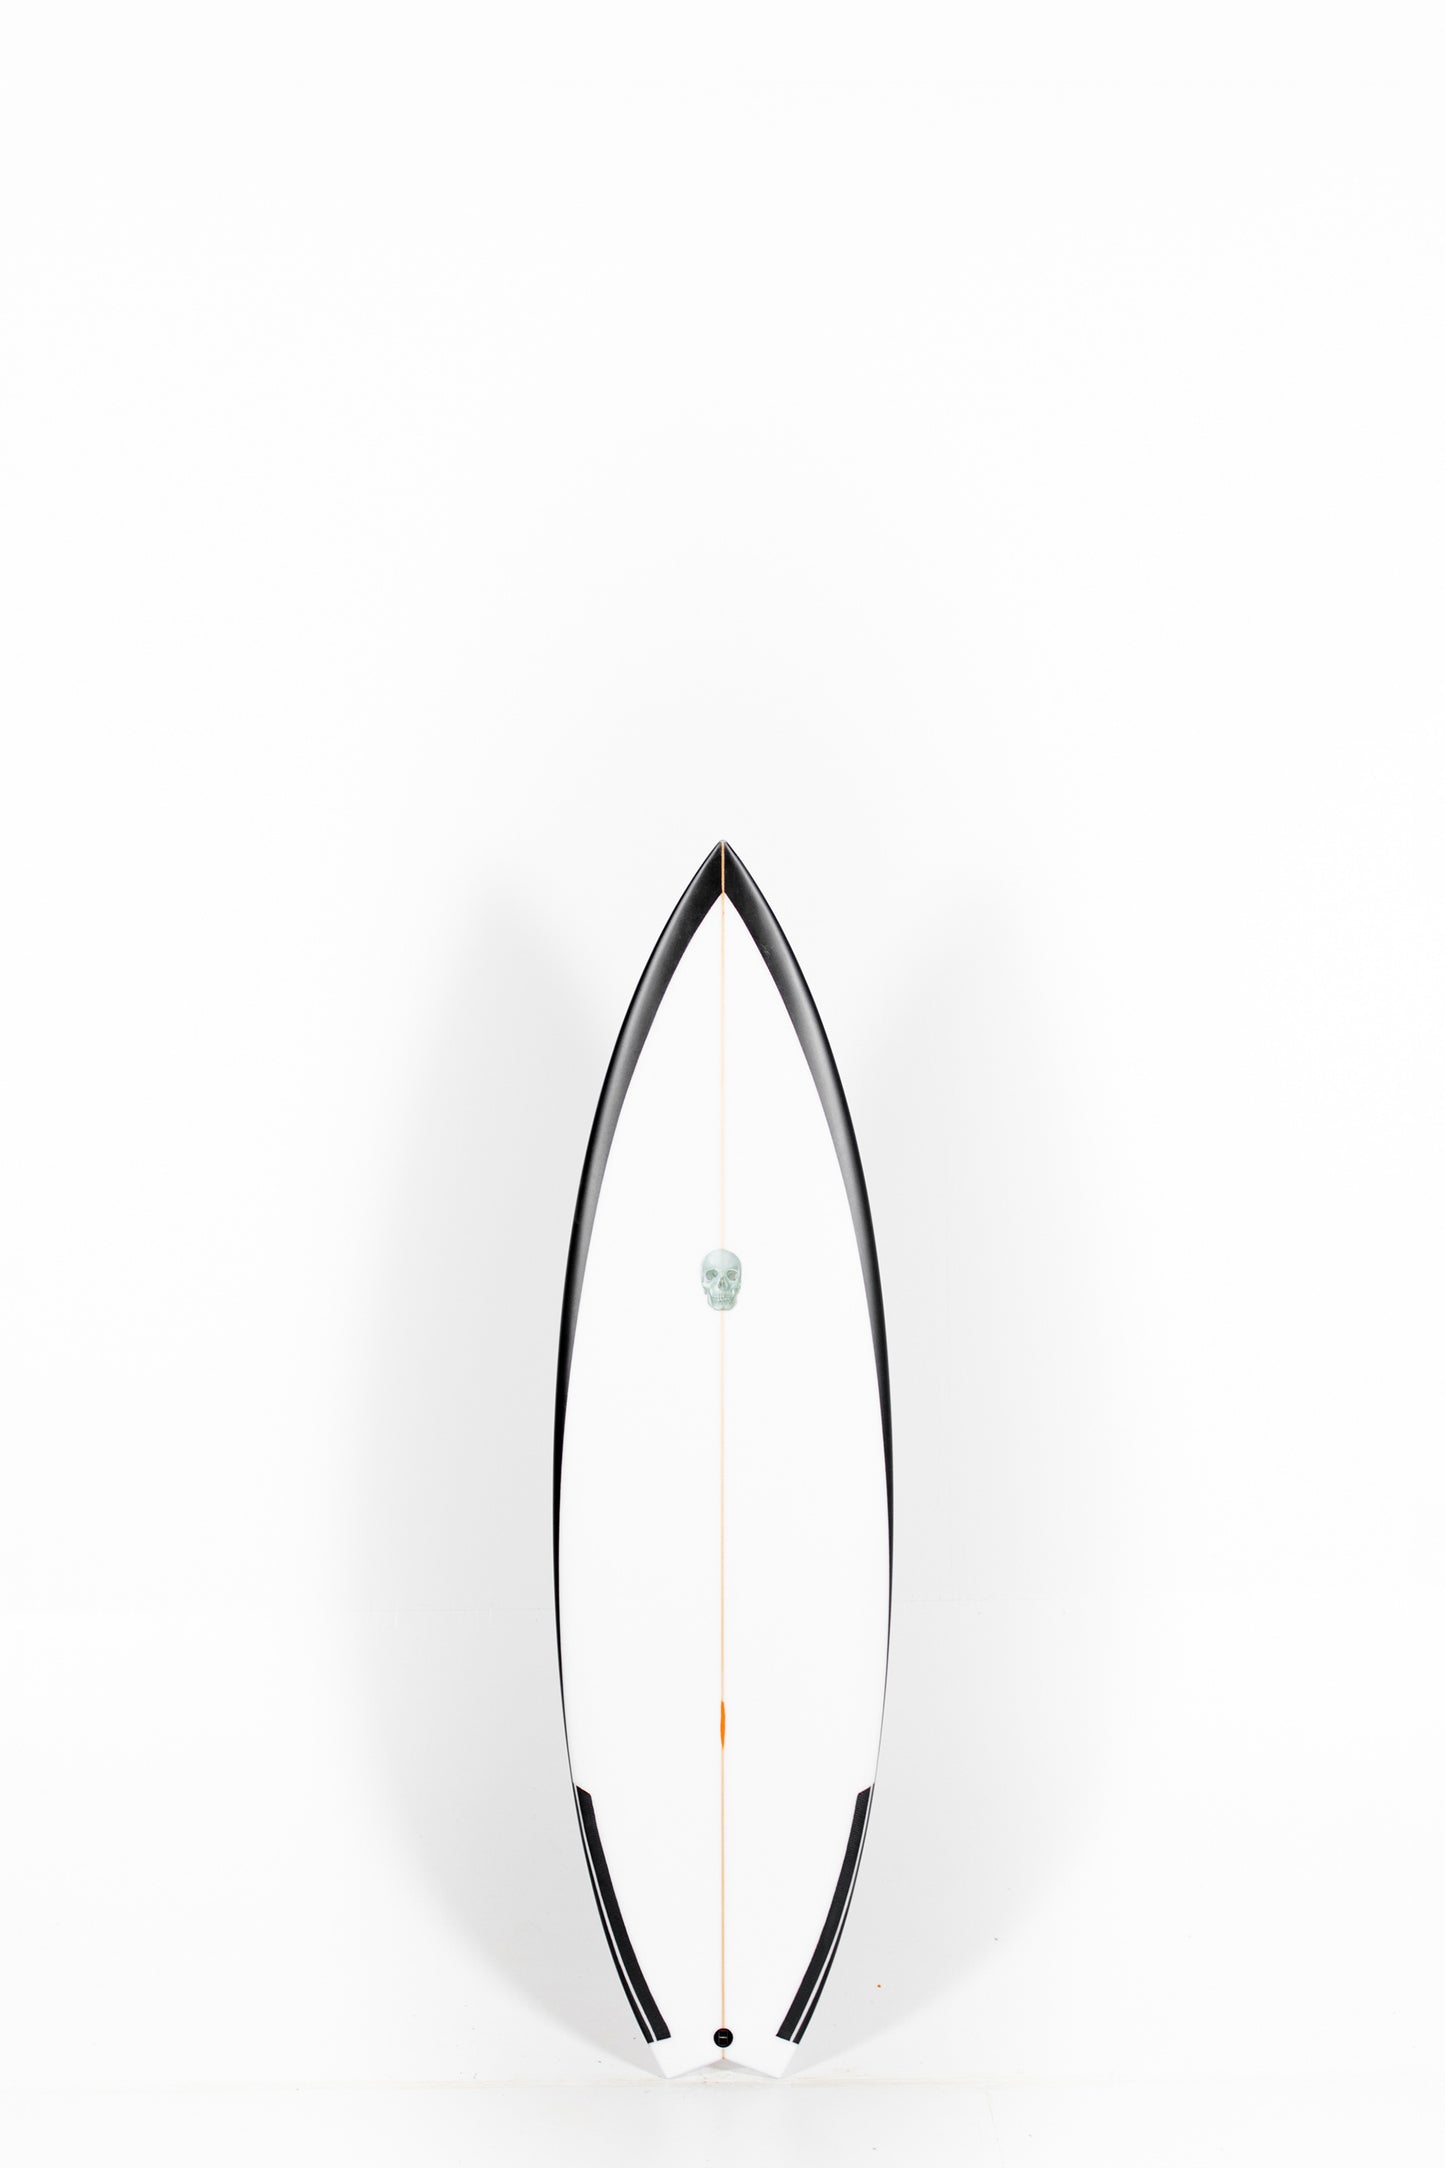 サーフィンchristenson surfboard BRADLEY GERLACHモデル - サーフィン